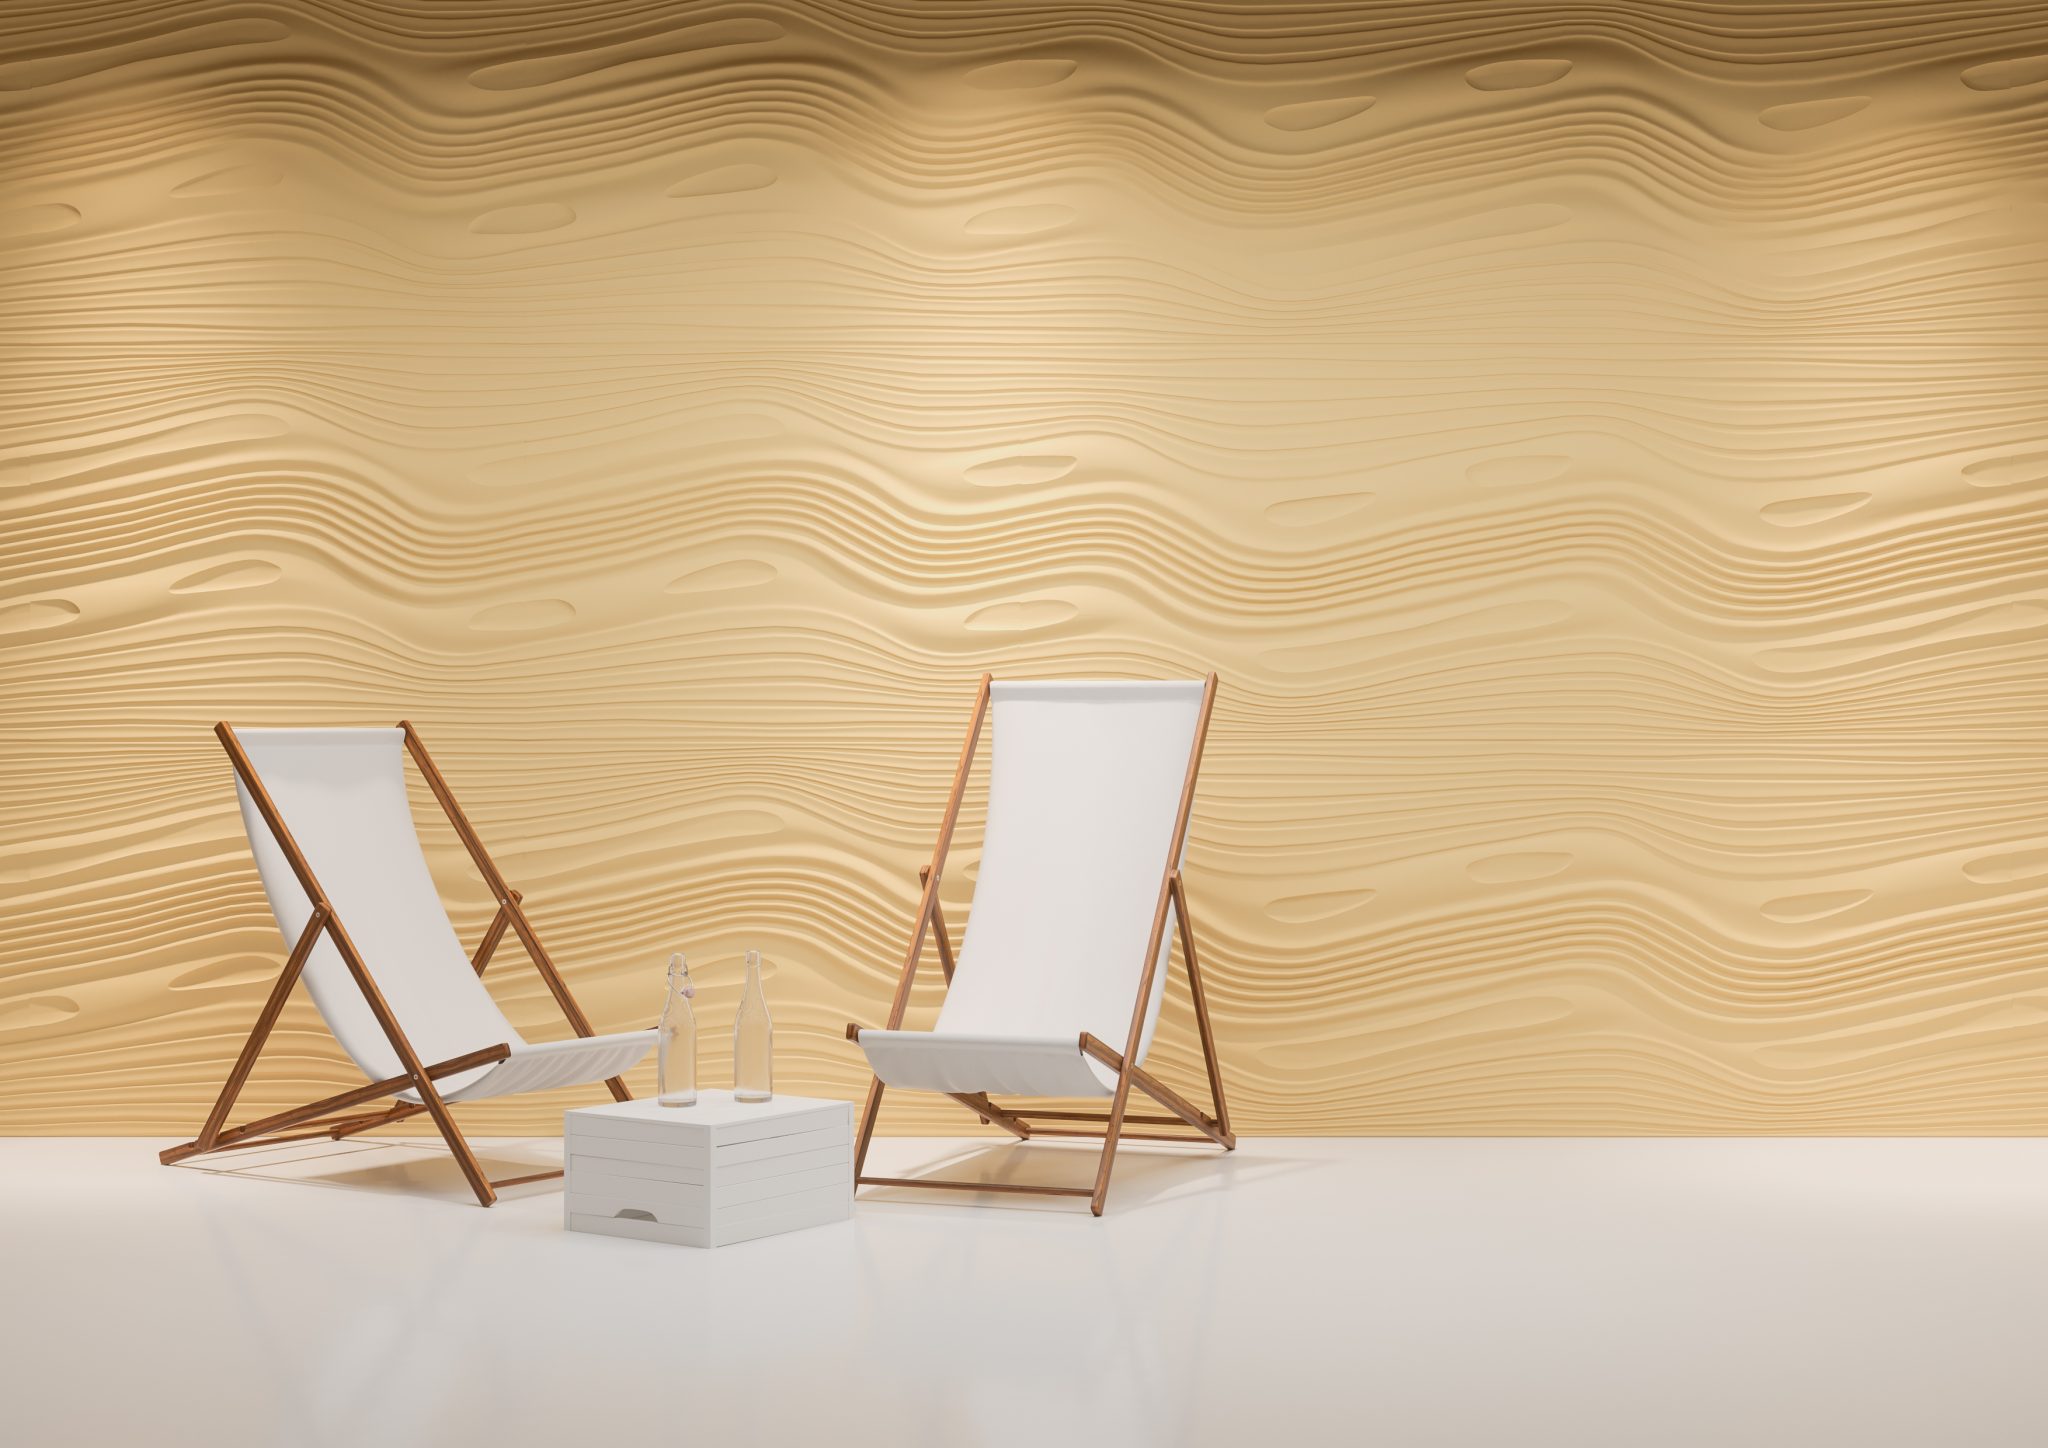 Panel dekoracyjny LAGUNA Dunes imitujący wzór na piasku